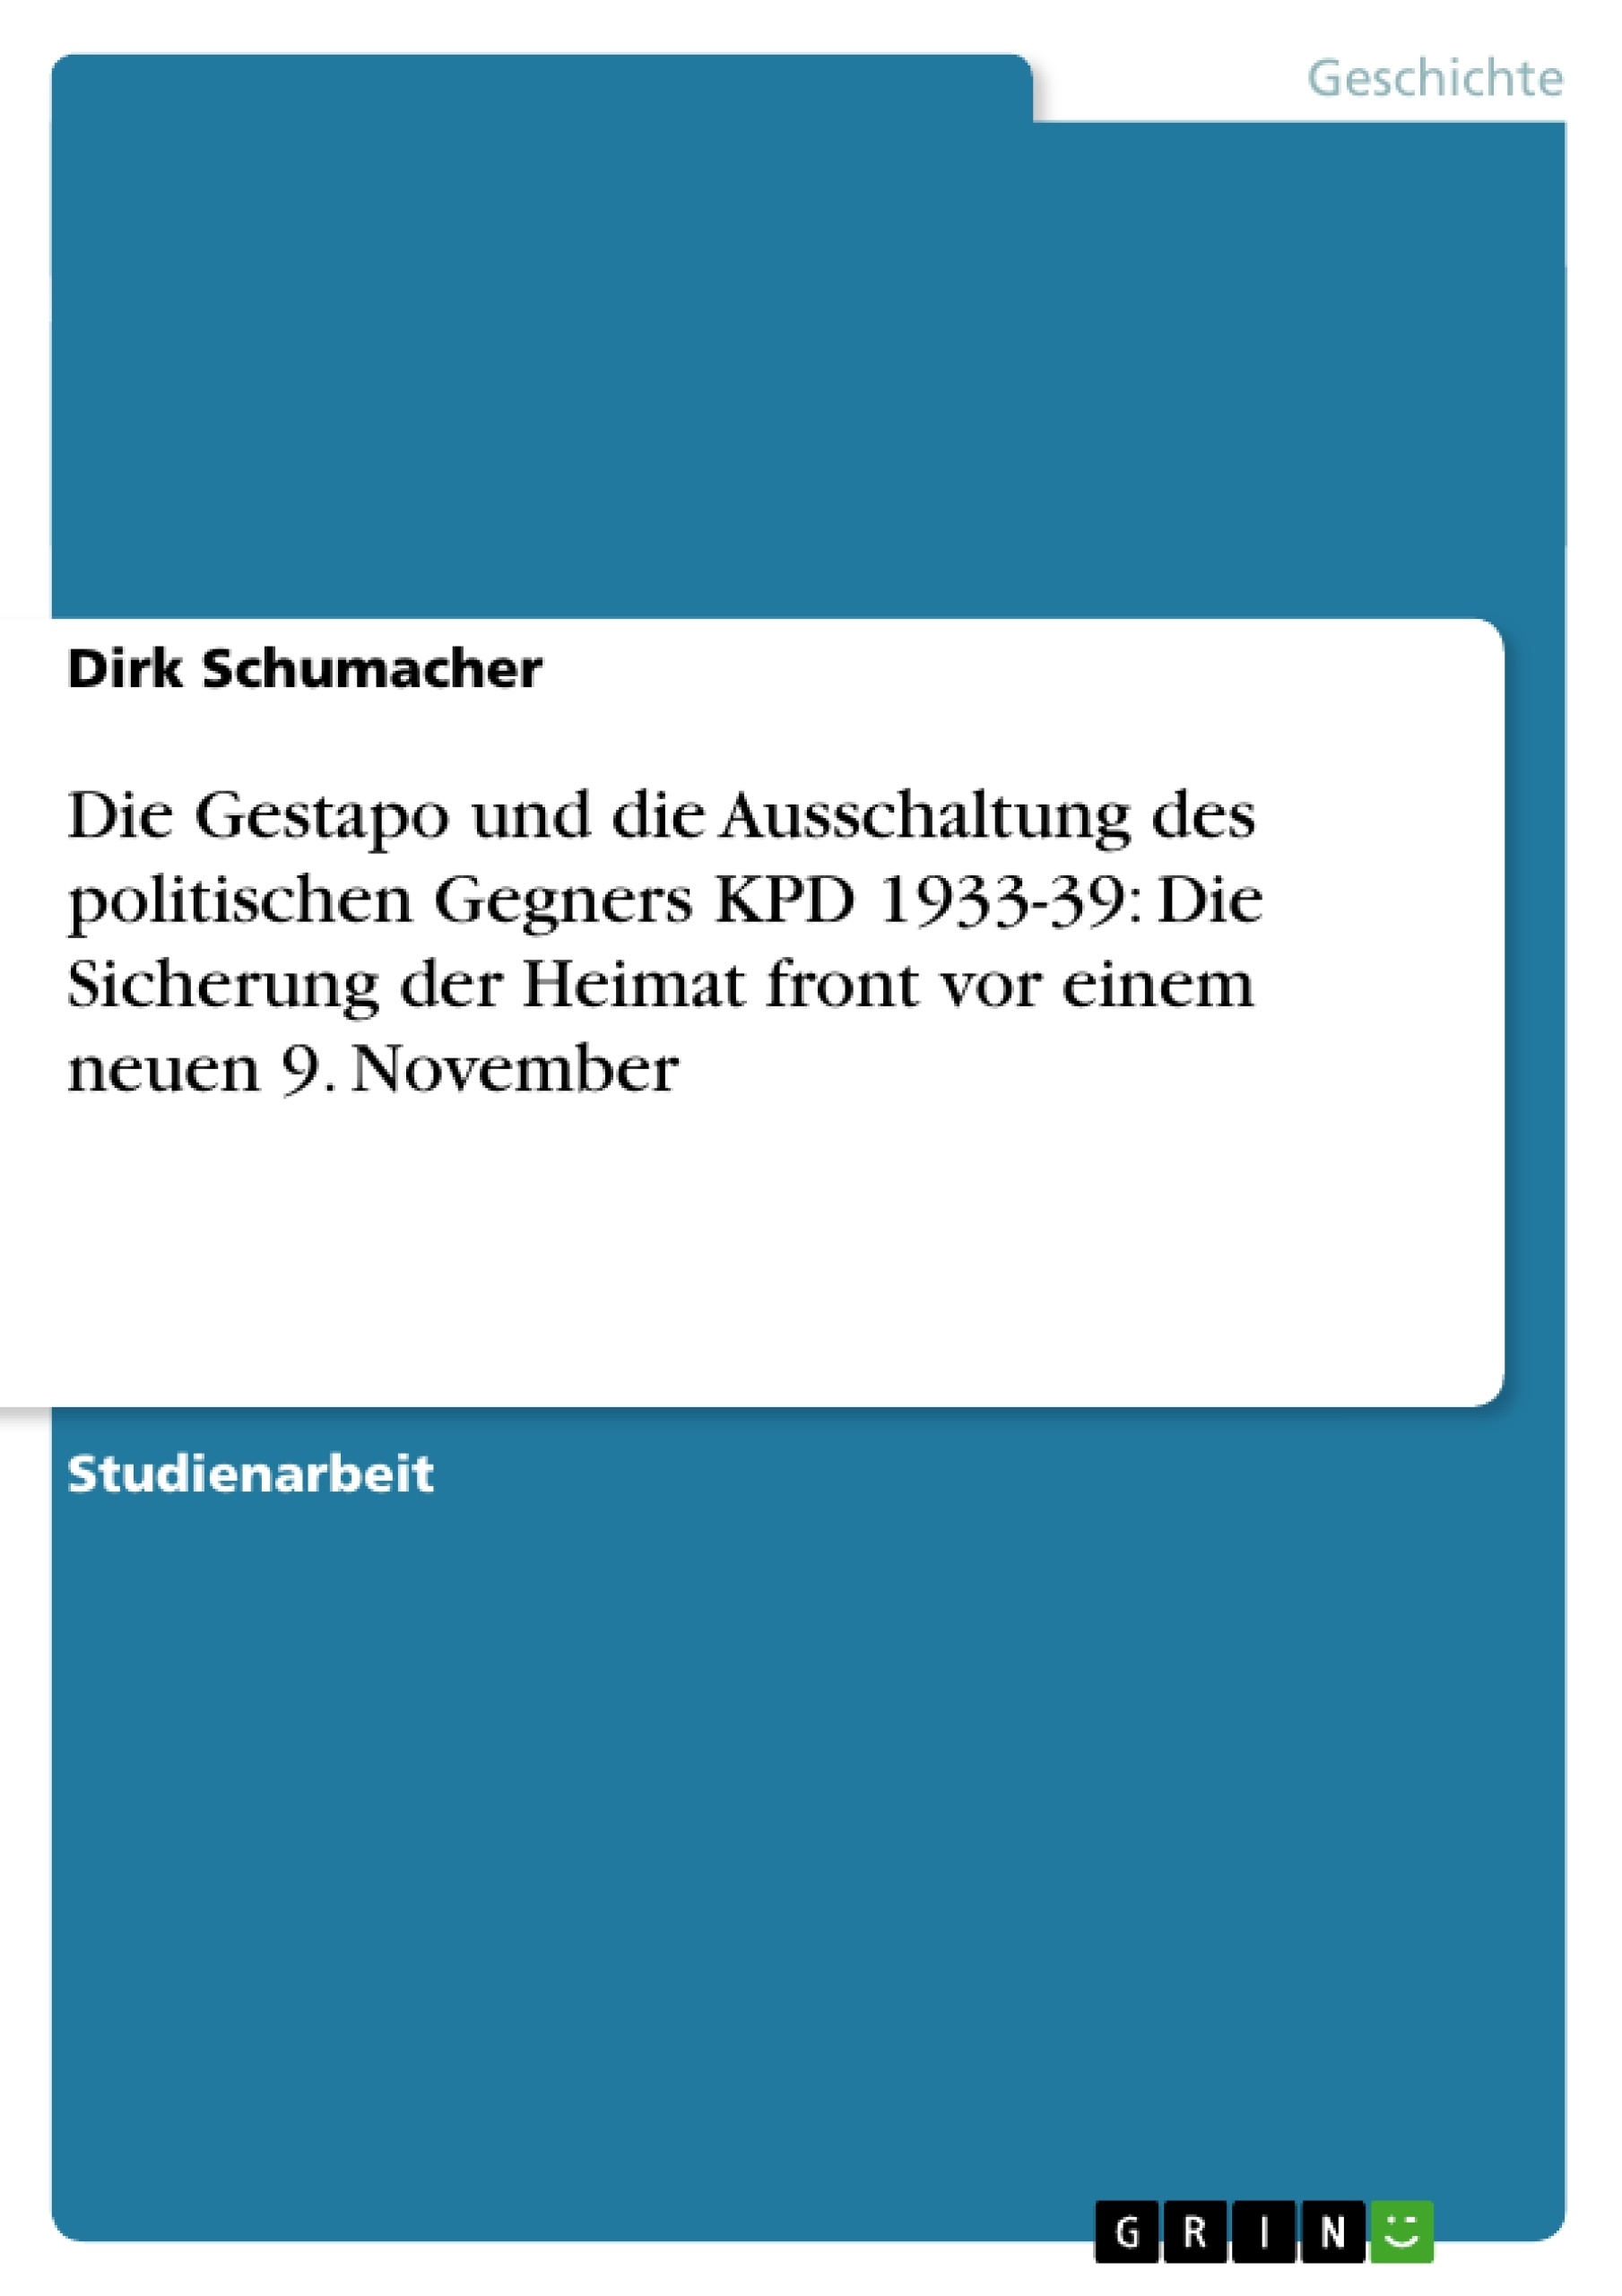 Título: Die Gestapo und die Ausschaltung des politischen Gegners KPD 1933-39: Die Sicherung der Heimat front vor einem neuen 9. November